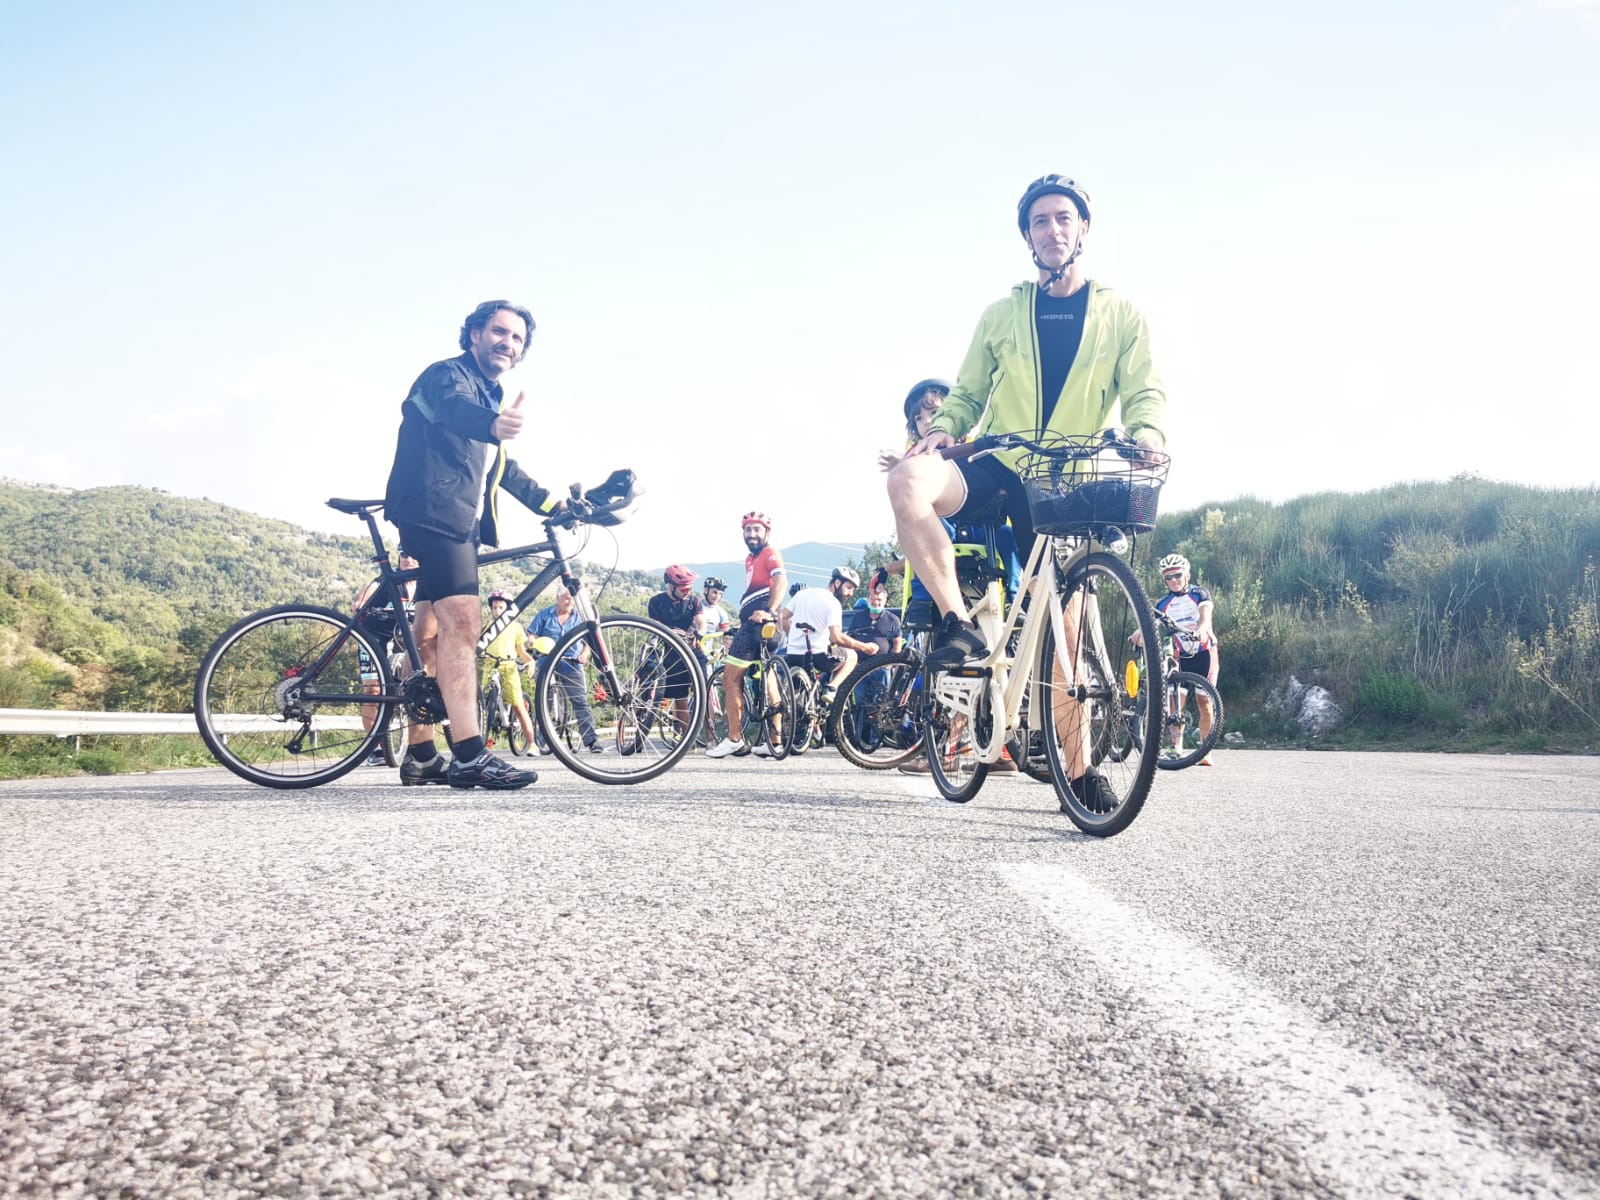 Dieci chilometri in bici per ricordare i morti sul lavoro: “Giro le vite spezzate” arriva a Caselle in Pittari